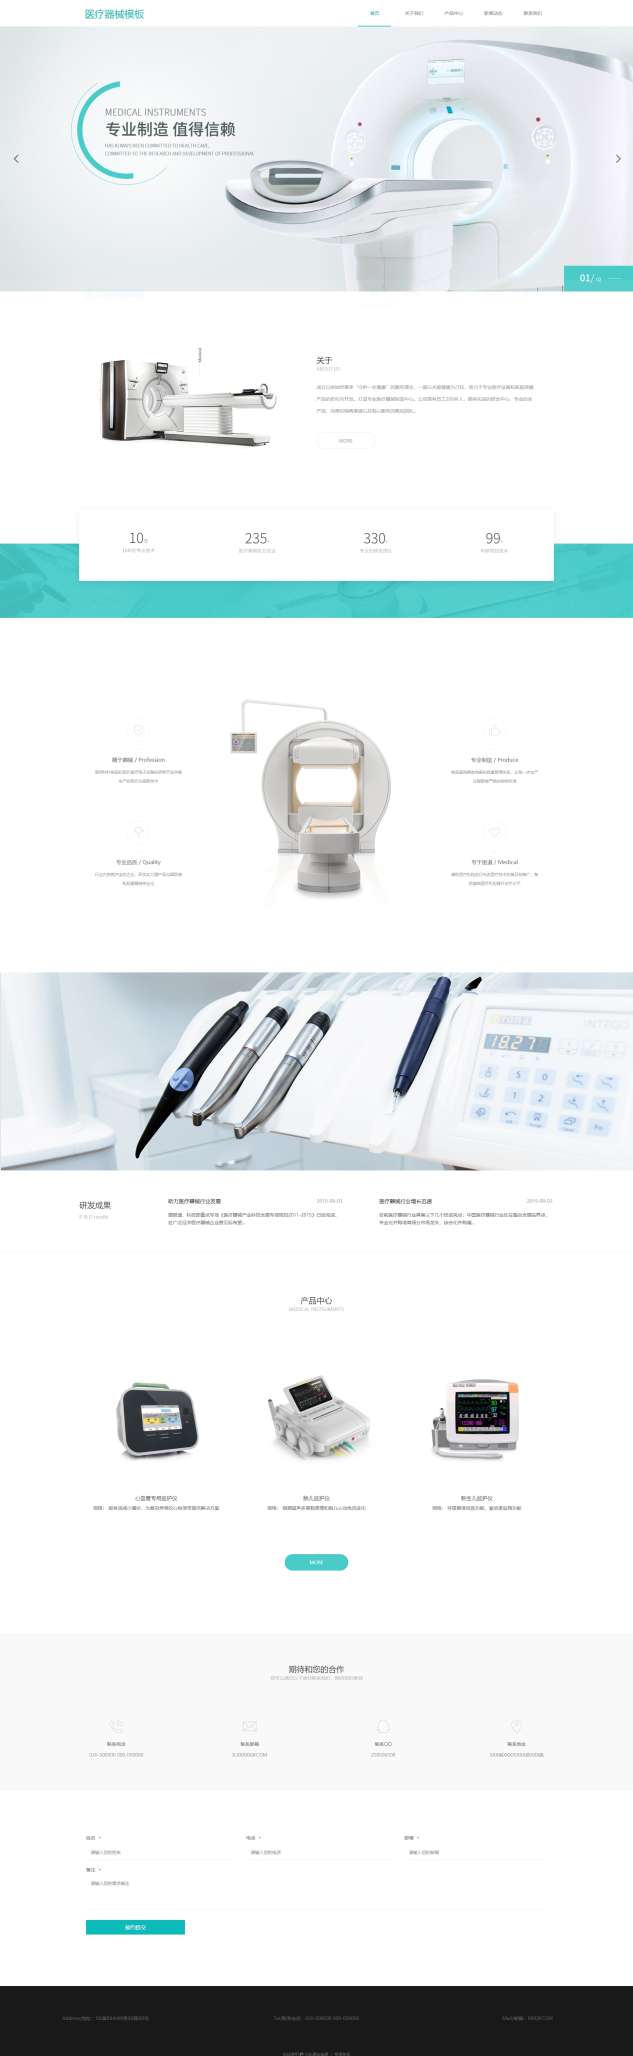 专业医疗器械大型设备网站模板